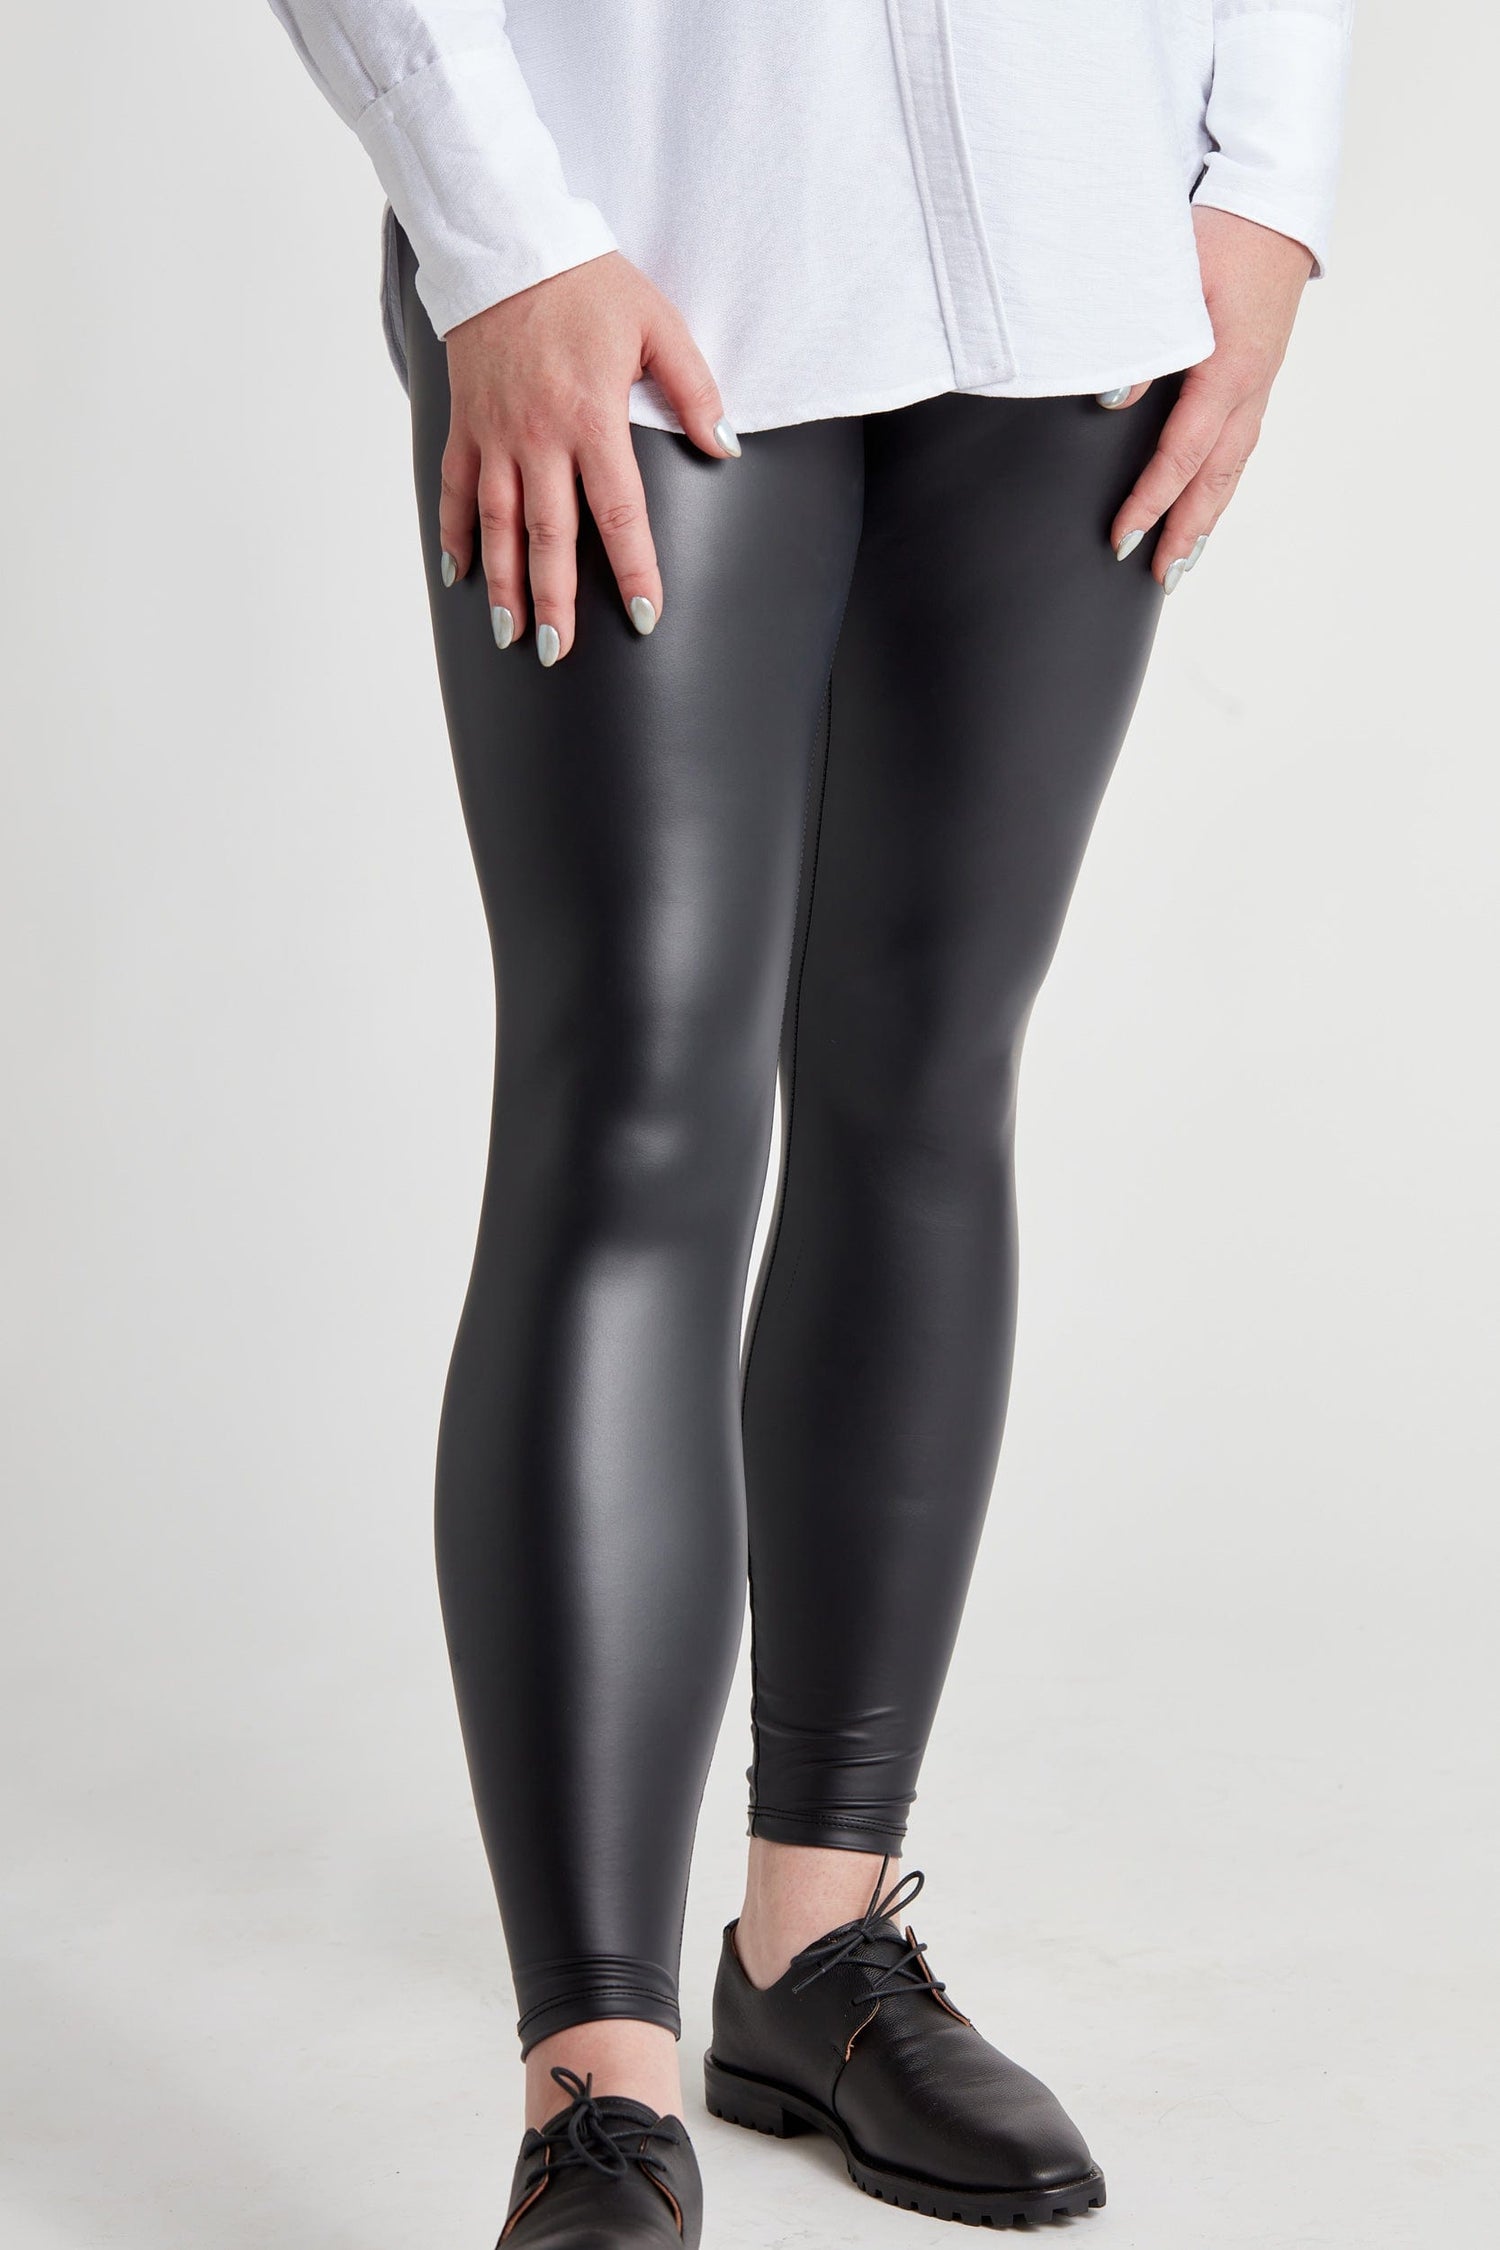 Maison Jules Womens Super Slim Casual Leggings Size X-Large Color